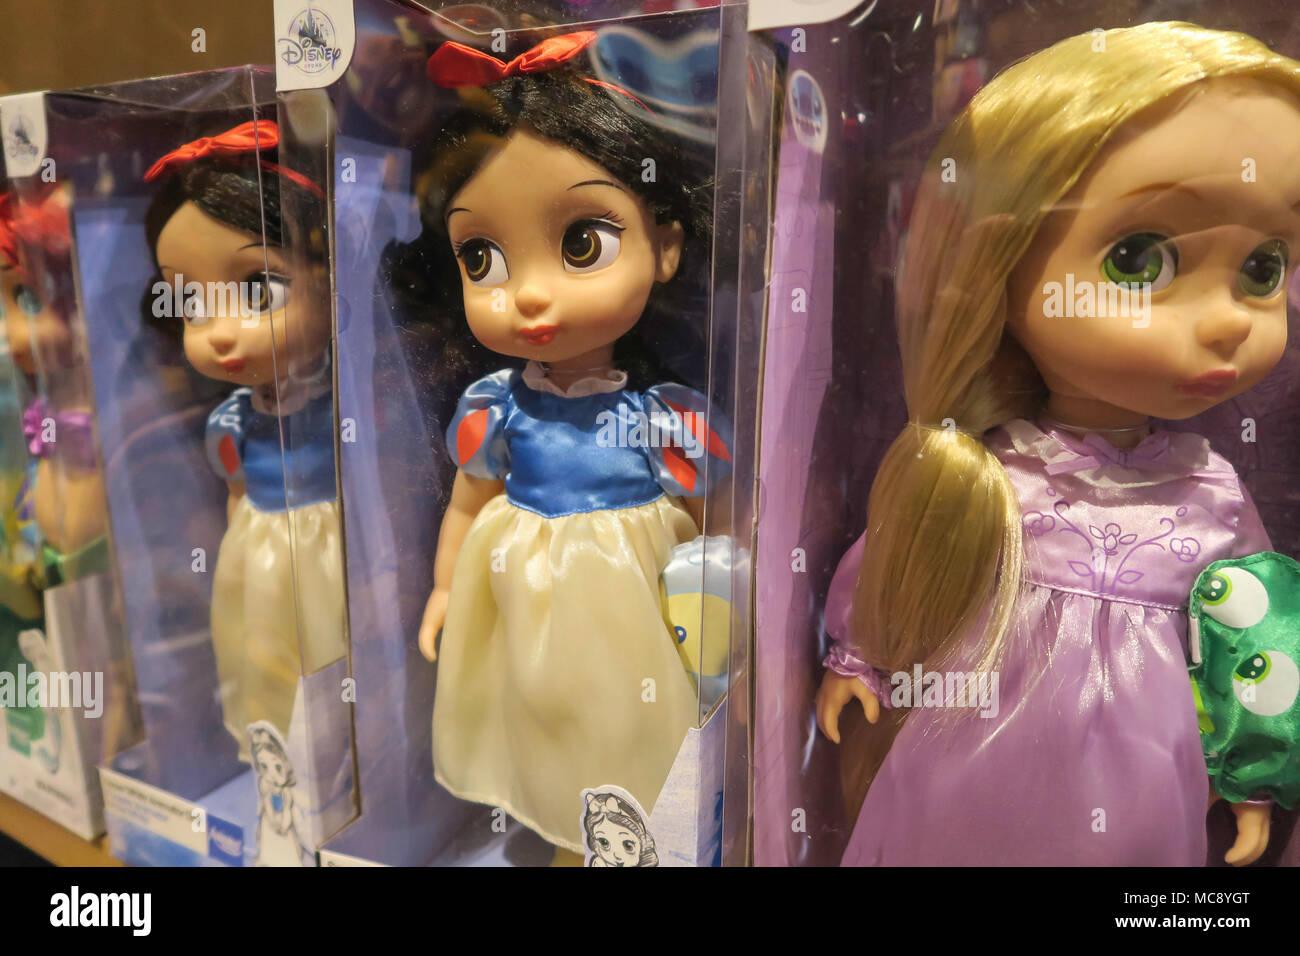 bambole da collezione disney